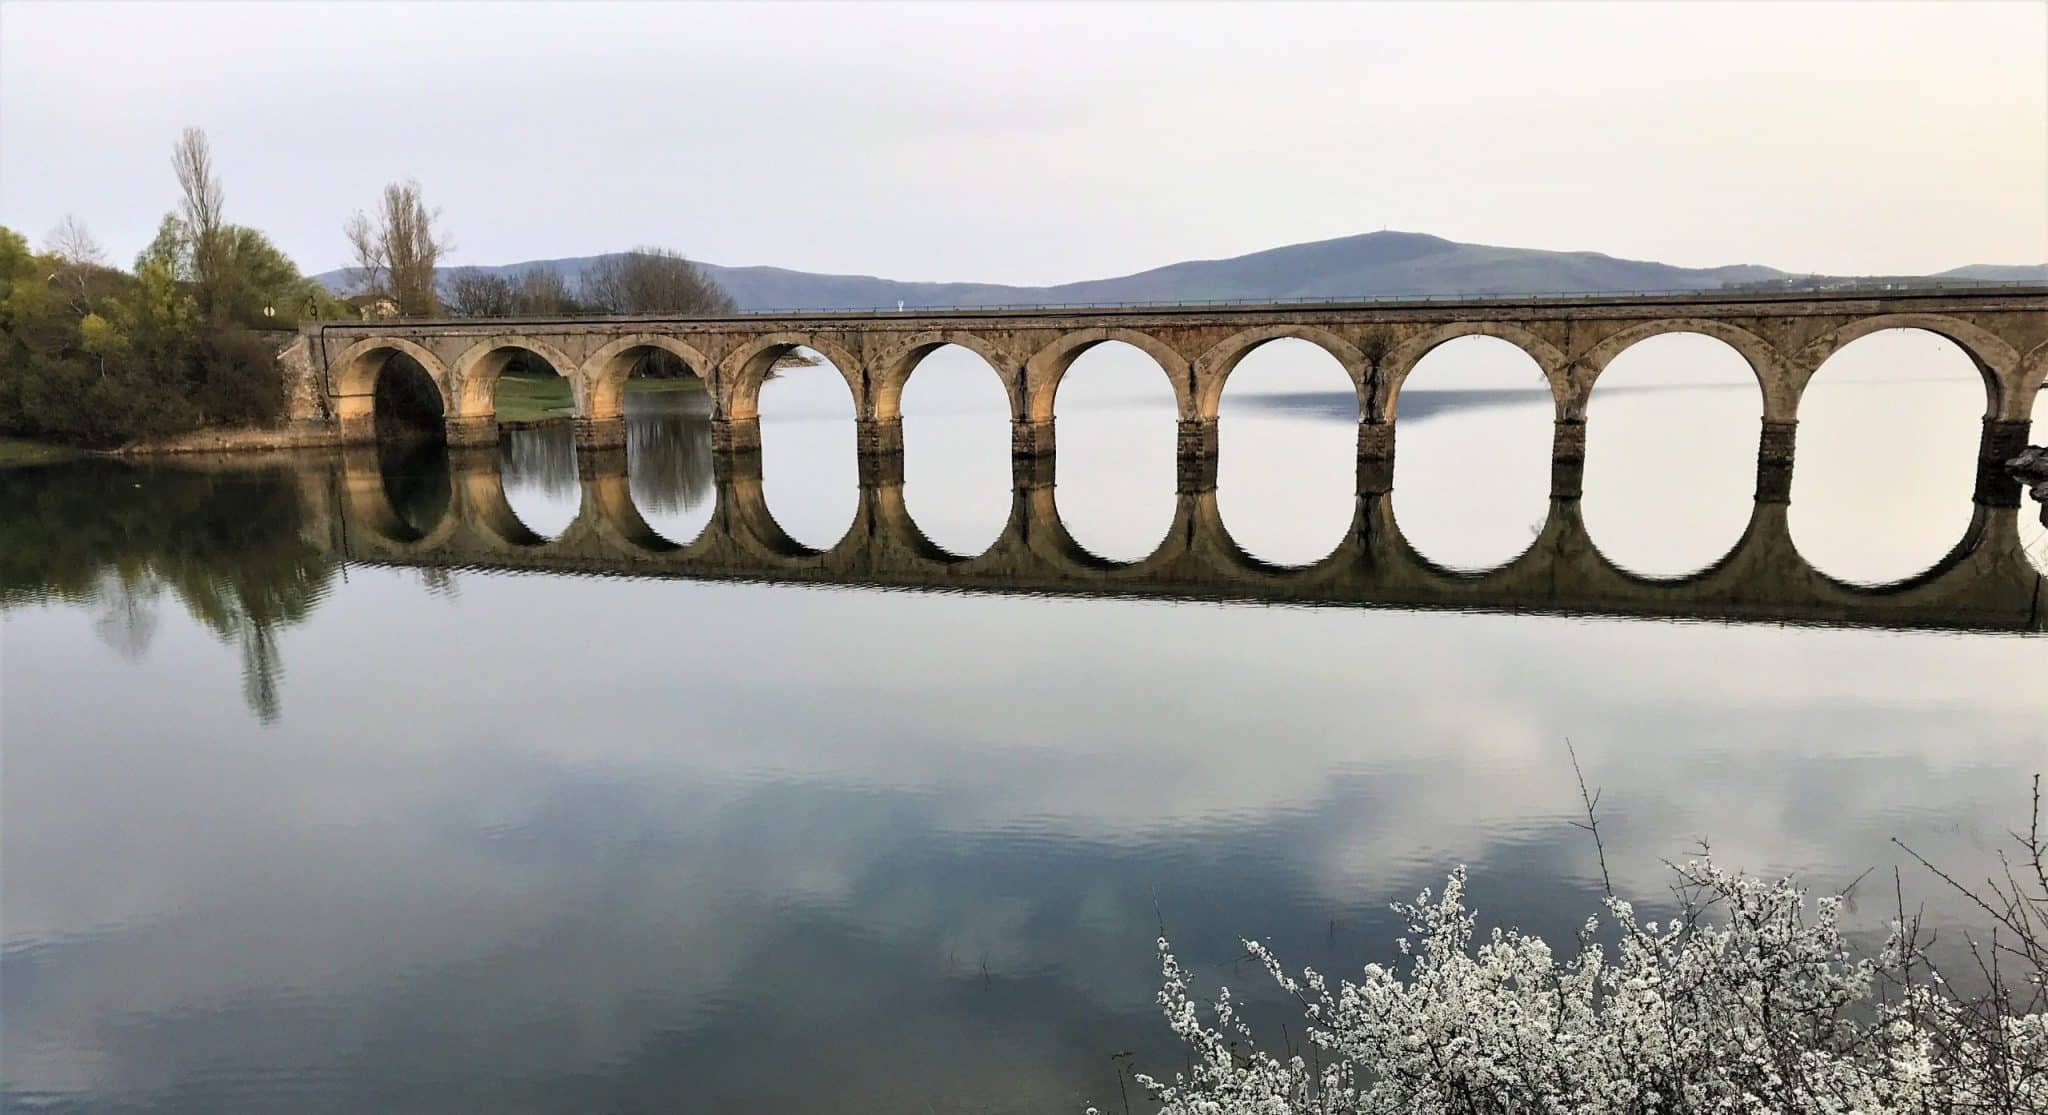 Puente ferrocarril Arija Burgos scaled